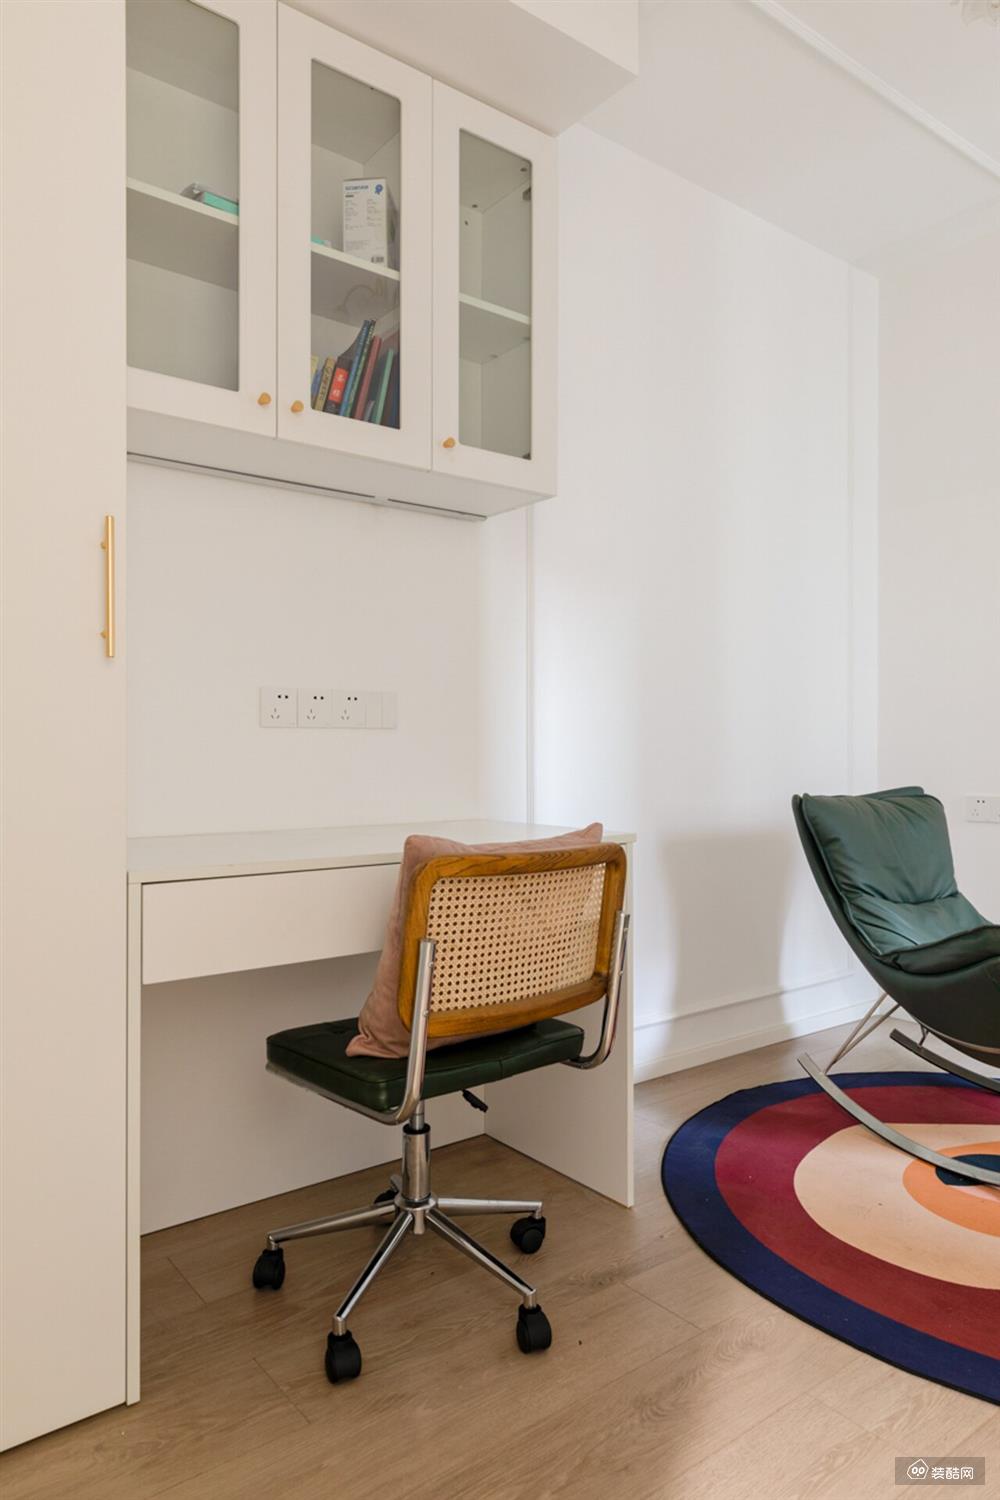 书房分为办公区和休闲区，墙面大面积留白，用鲜明的红、黄、蓝撞色来装点空间，打造出极强的视觉张力。地板的木色调又为空间注入一丝质朴的气息。